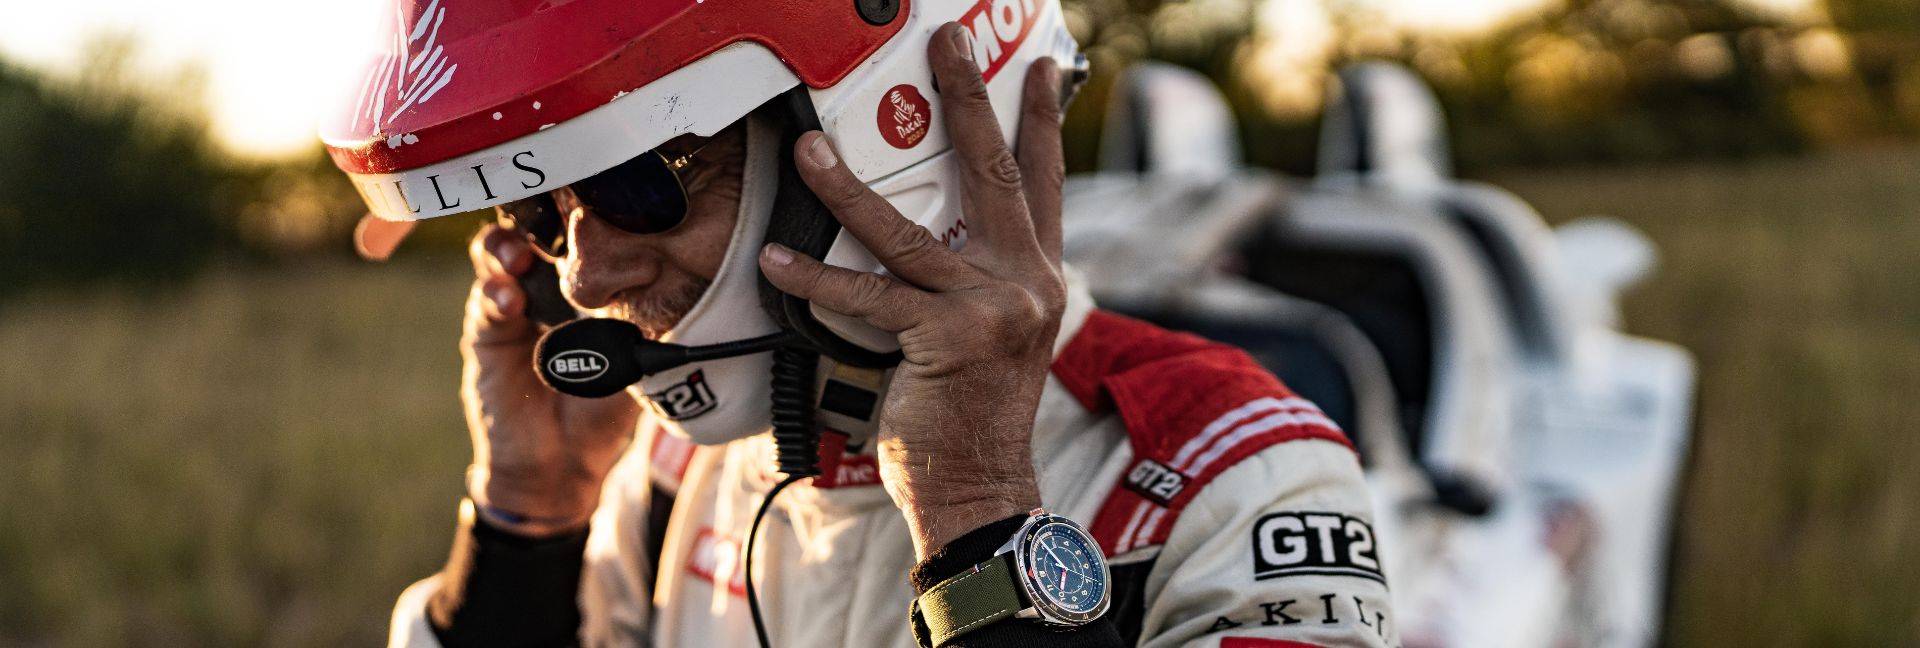 Rencontre avec Stephan Lamarre : Pilote du Dakar Classic